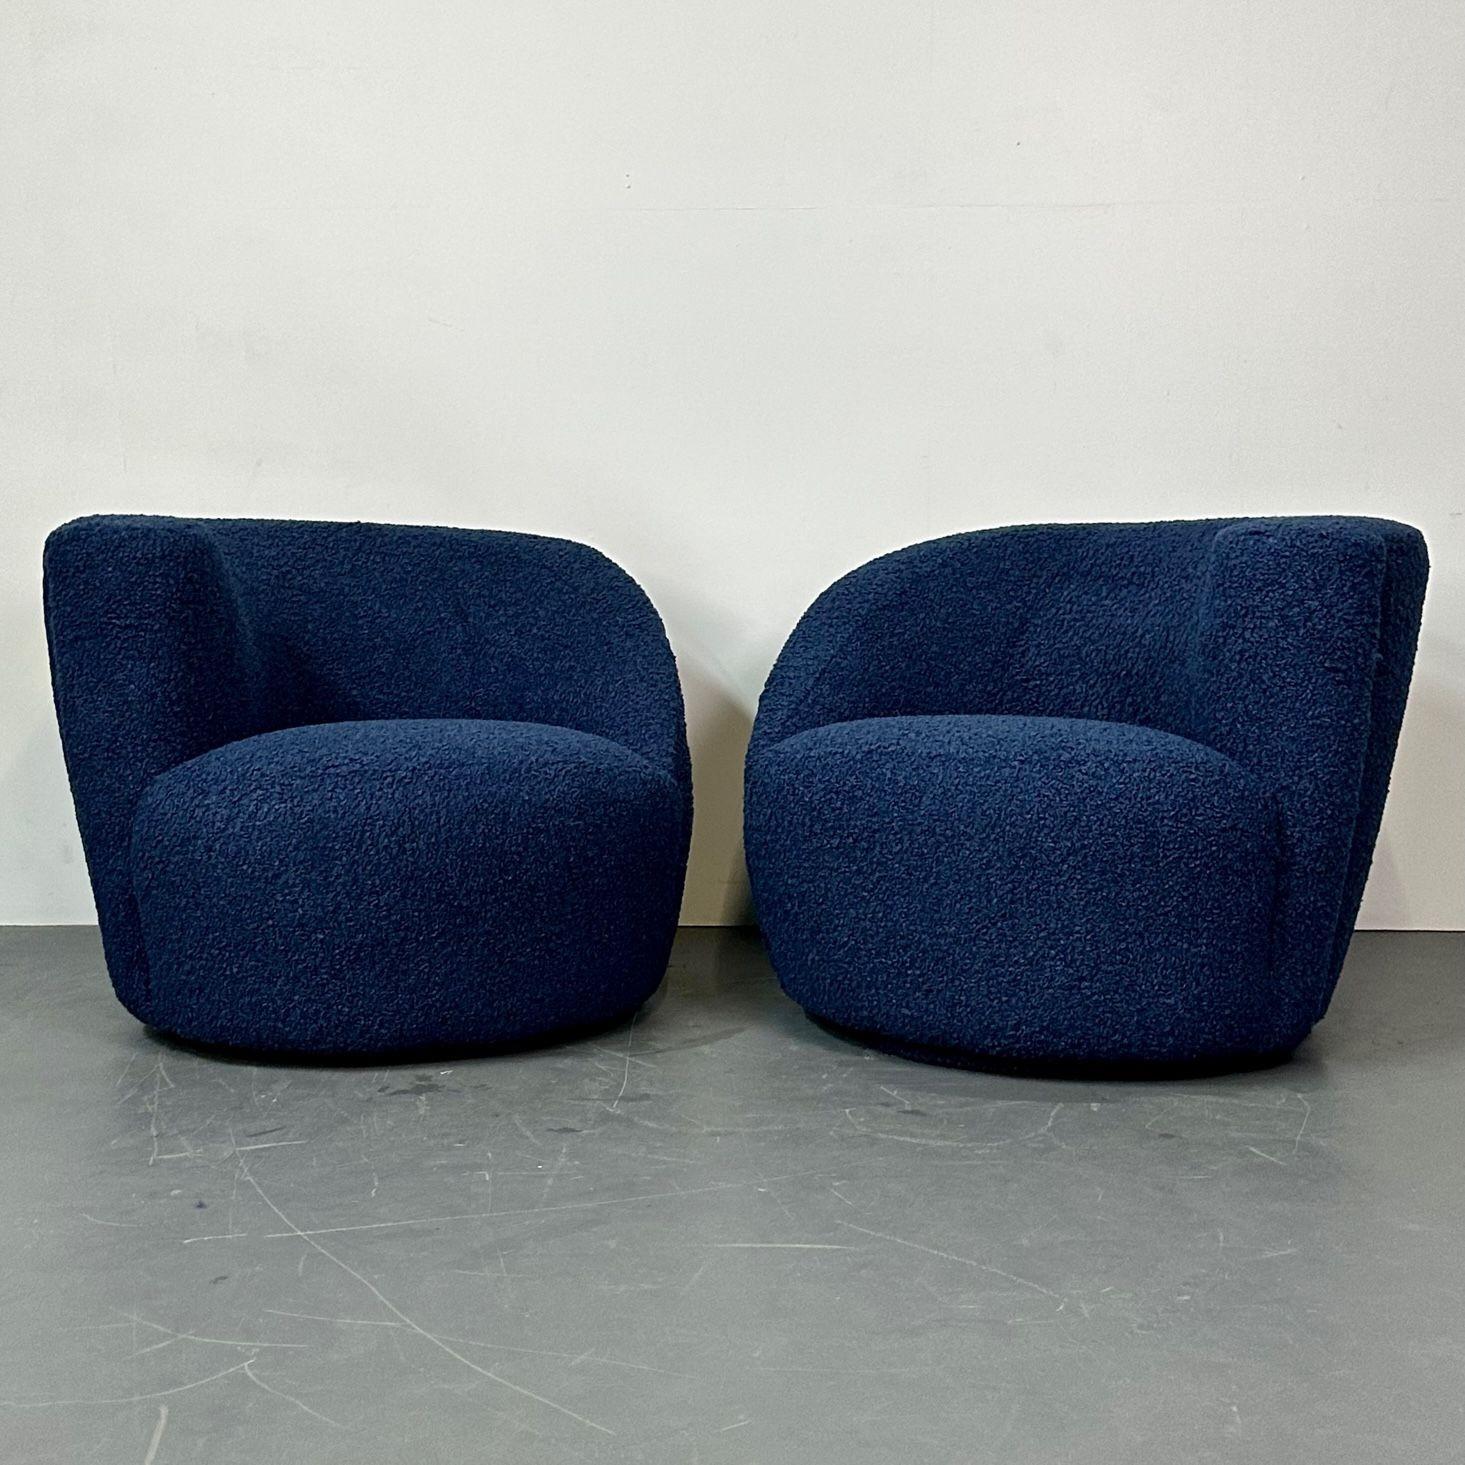 Paar Mid-Century Modern Nautilus Style Swivel / Lounge Chairs, Blue Faux Fur
Gegensätzliche Drehstühle in organischer Nierenform, neu gepolstert mit einem flauschigen Sherpa-Boucle-ähnlichen Stoff. Dieses Design ähnelt dem der ikonischen